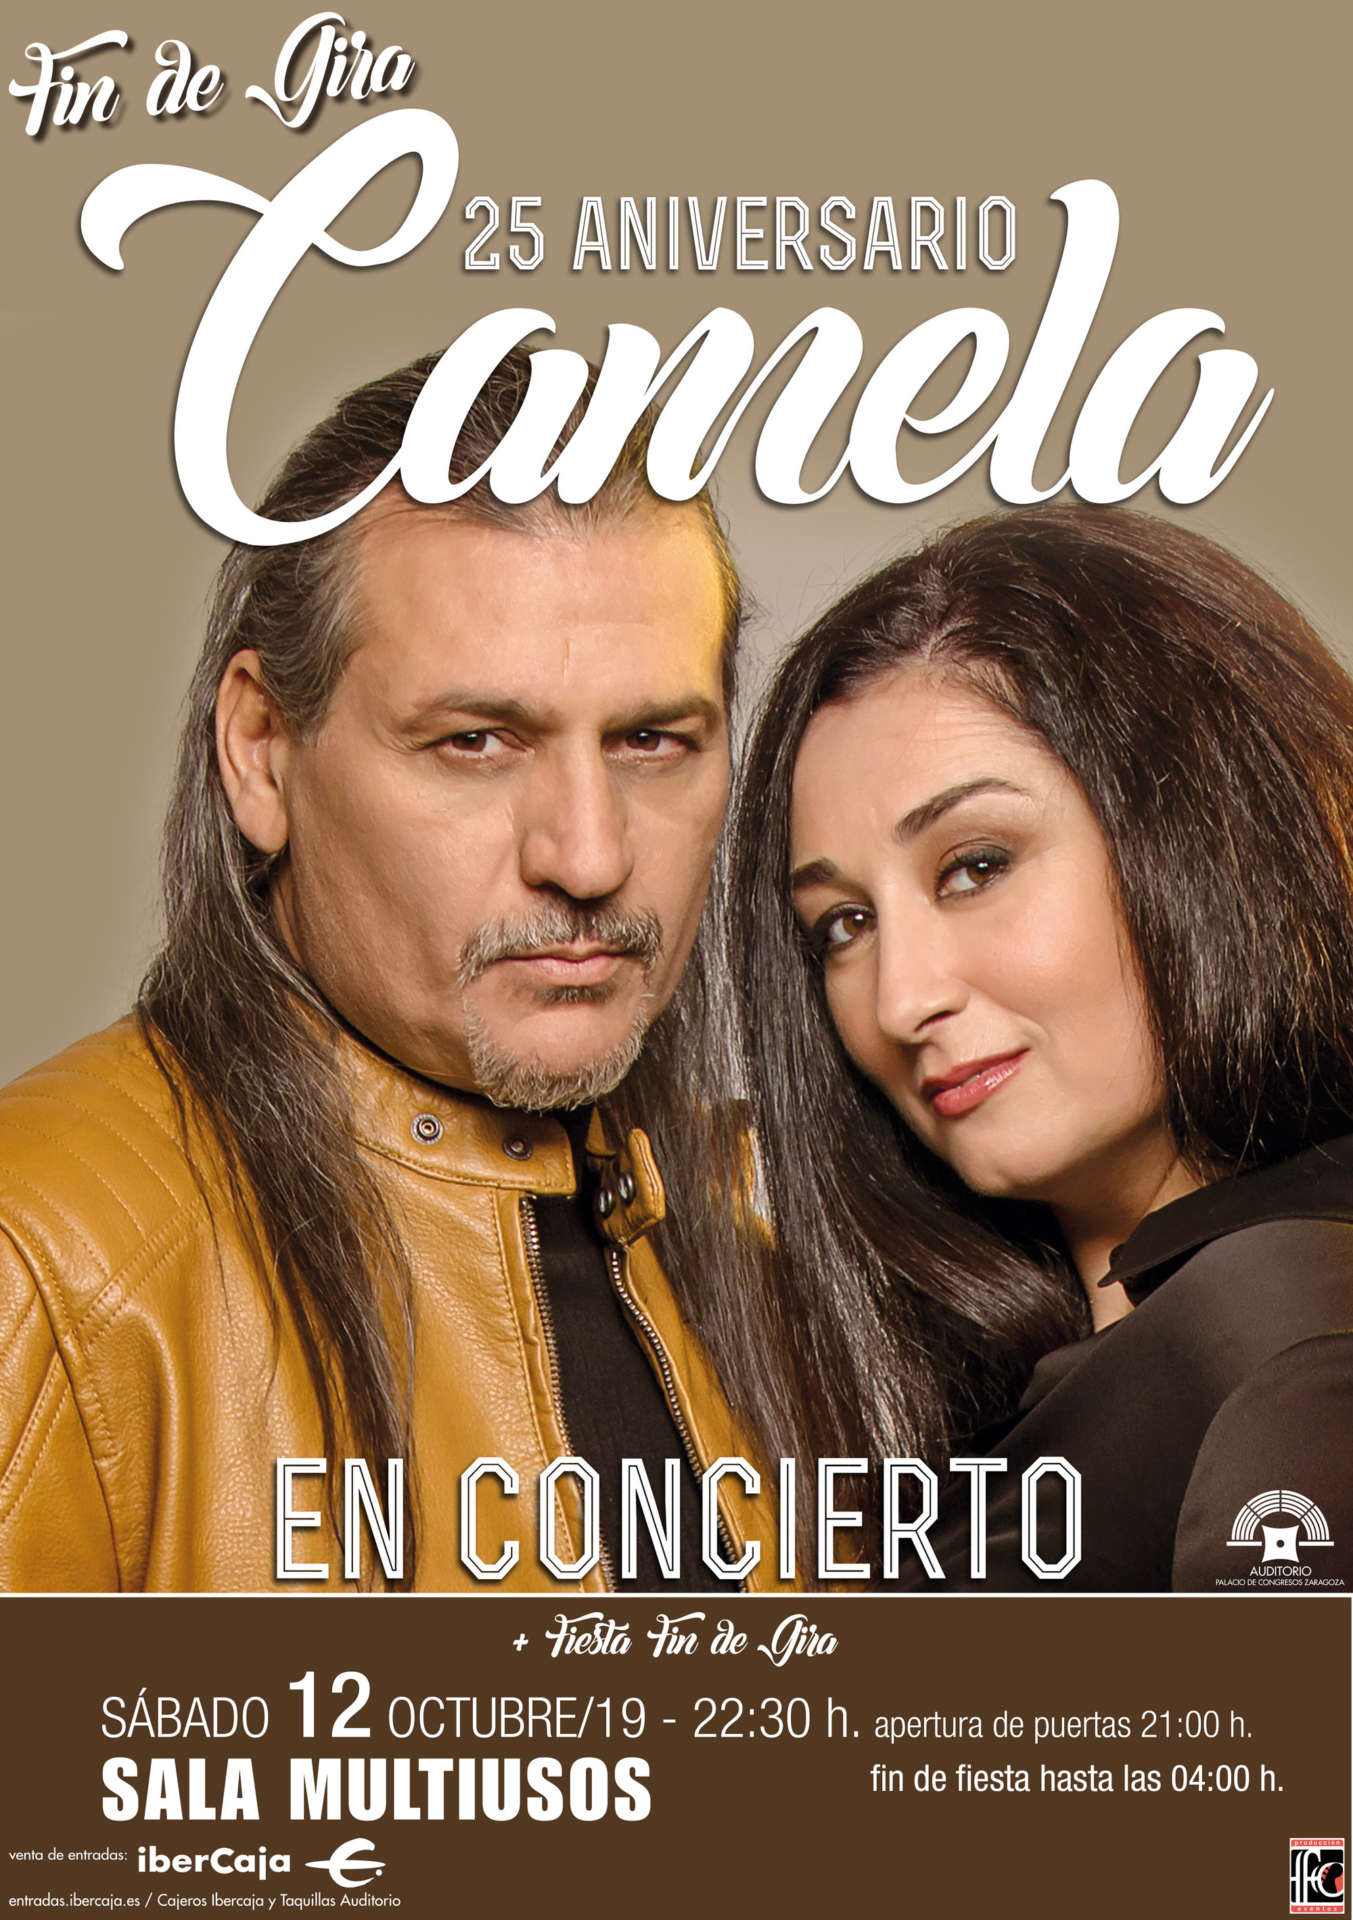 Camela - Fin de gira 25 aniversario en la Sala Multiusos de Zaragoza